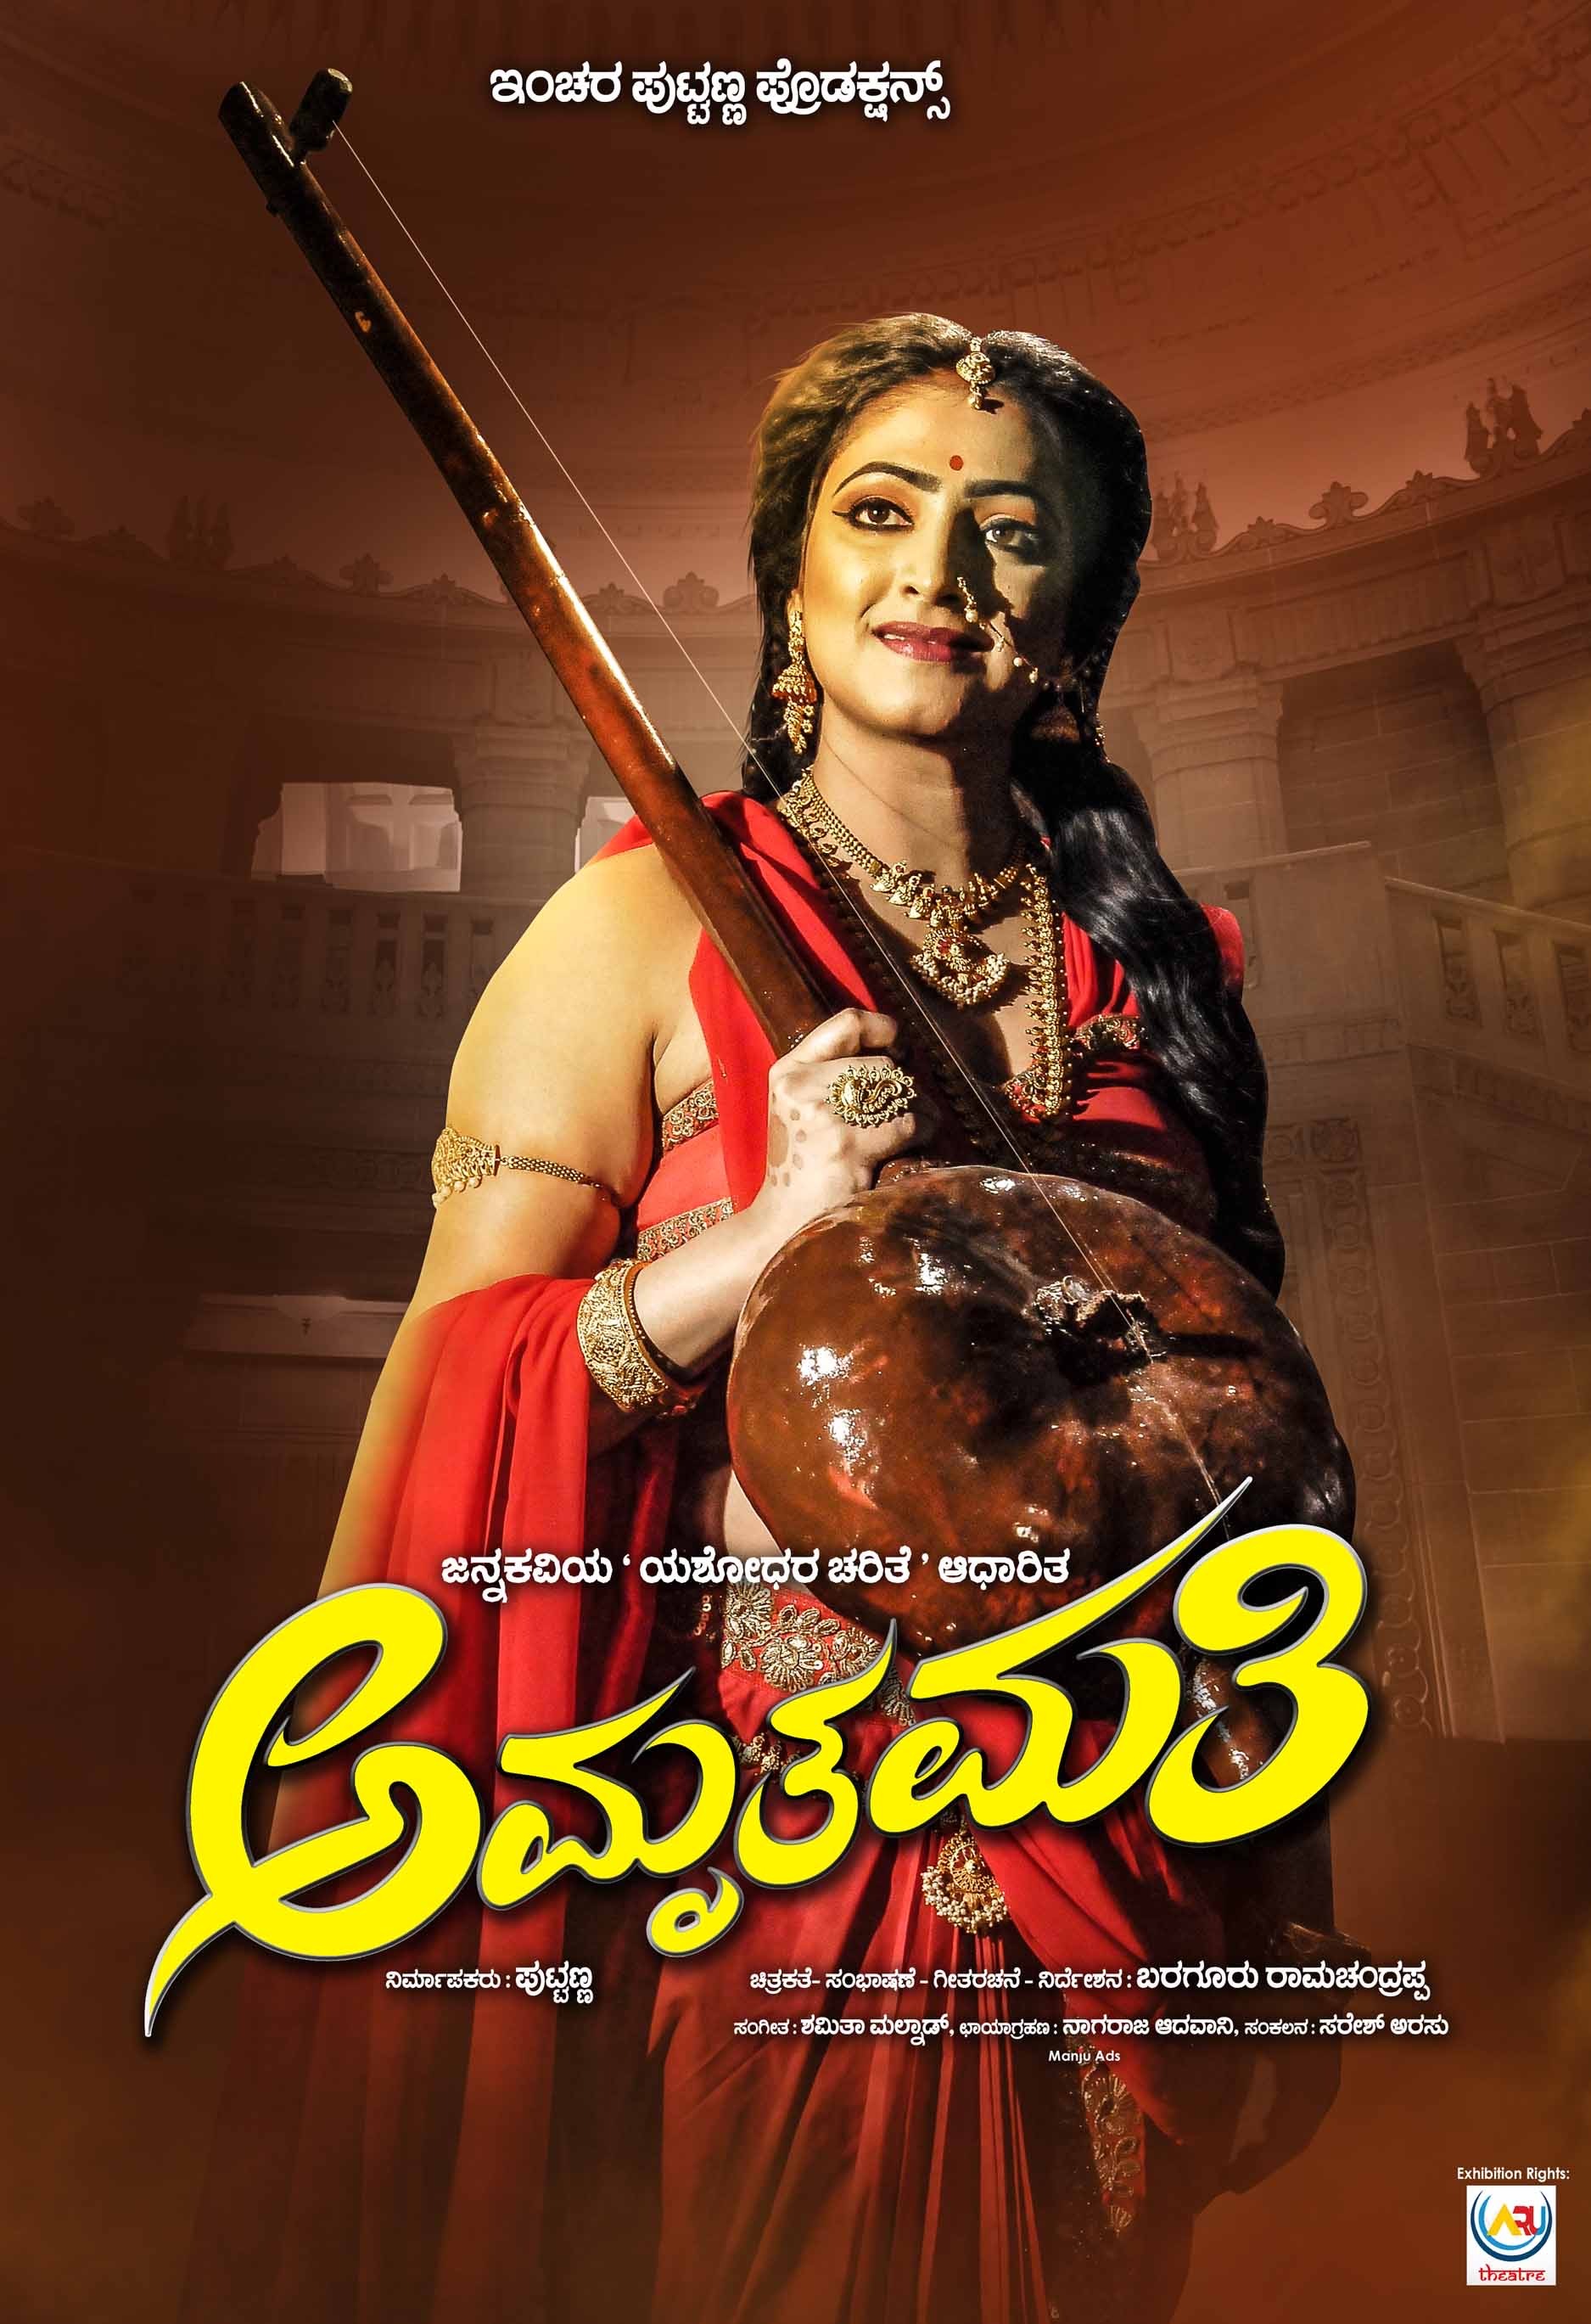 Mega Sized Movie Poster Image for Amruthamathi (#2 of 10)